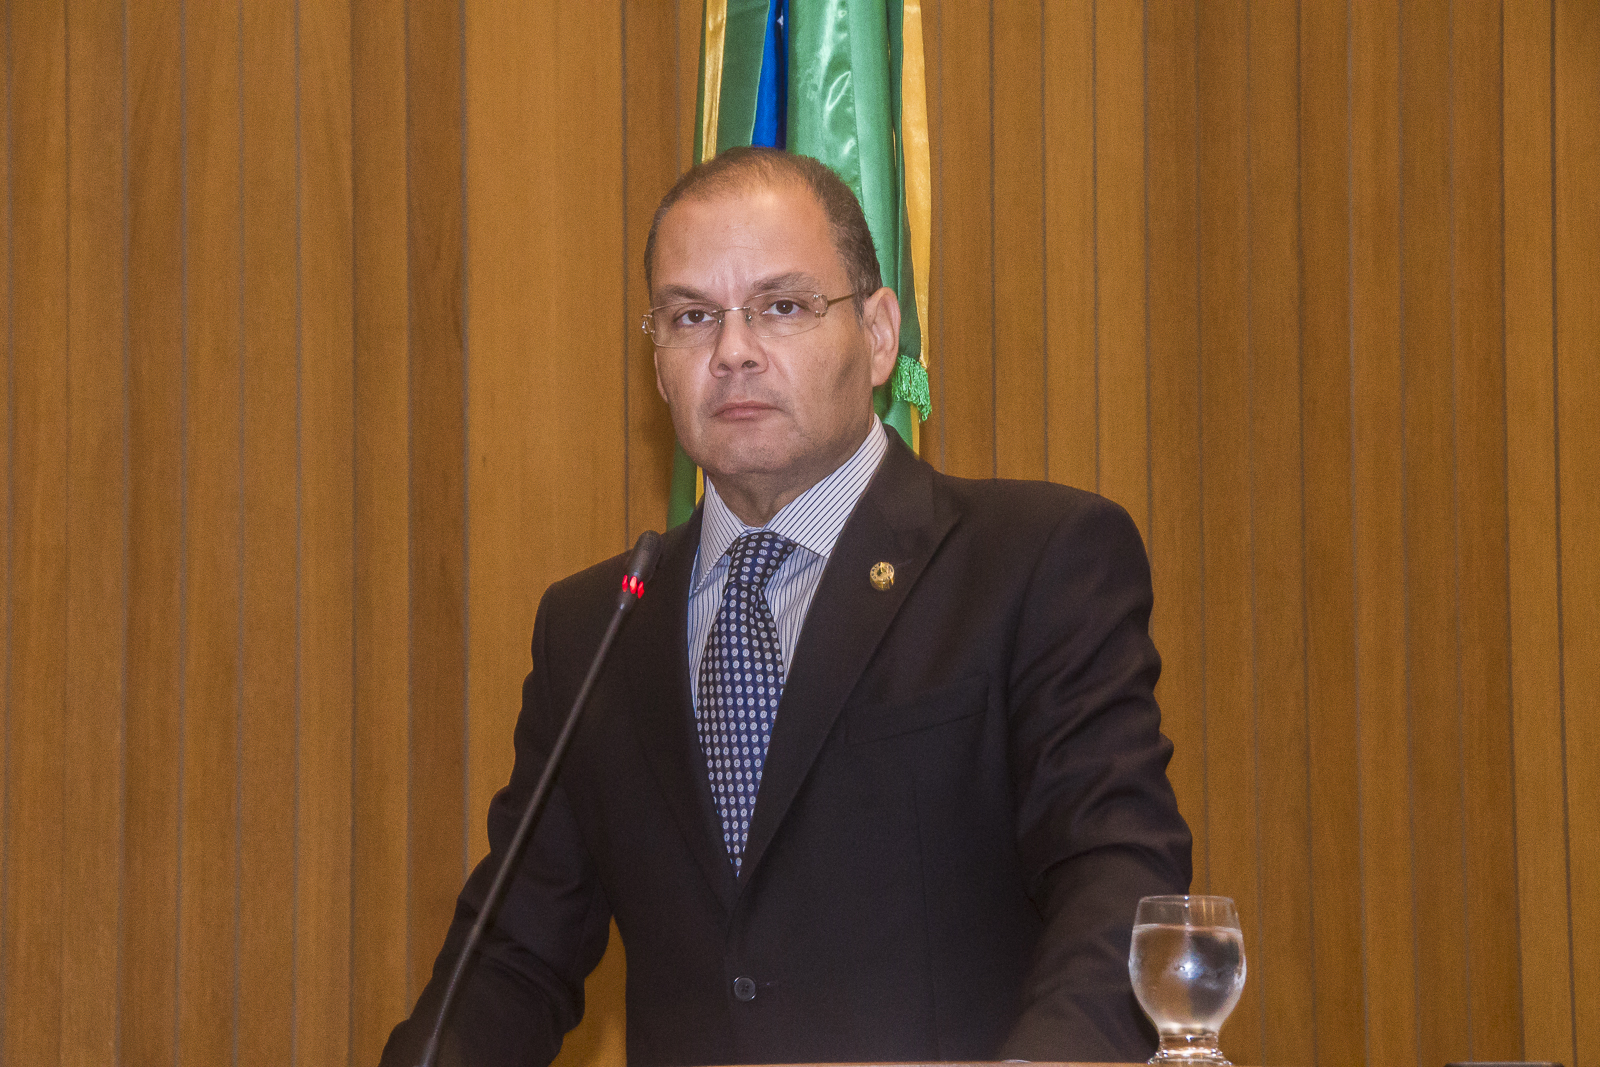 "As colocações da oposição não condizem com a realidade", diz Rogério, ao contestar críticas sobre programas do governo 